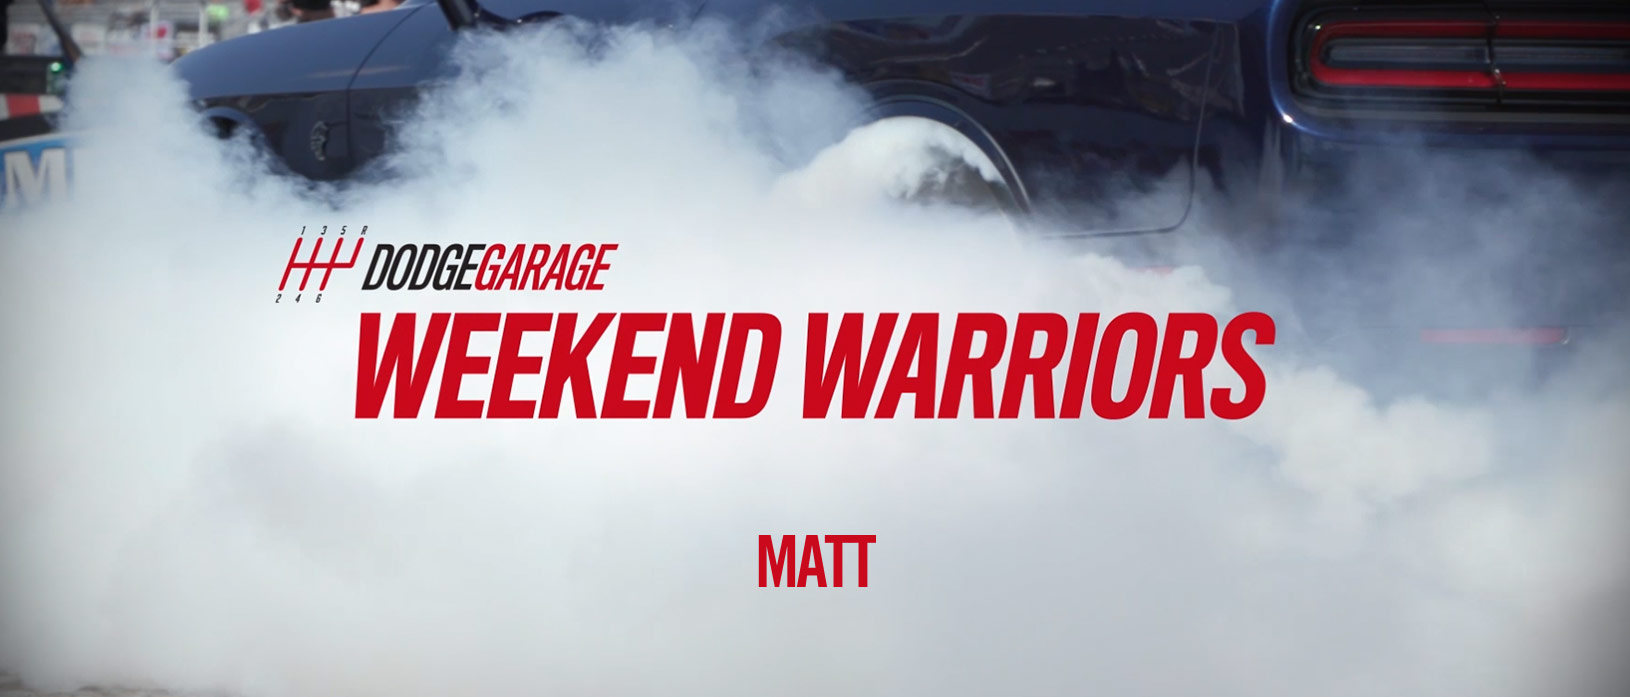 Weekend Warriors Matt